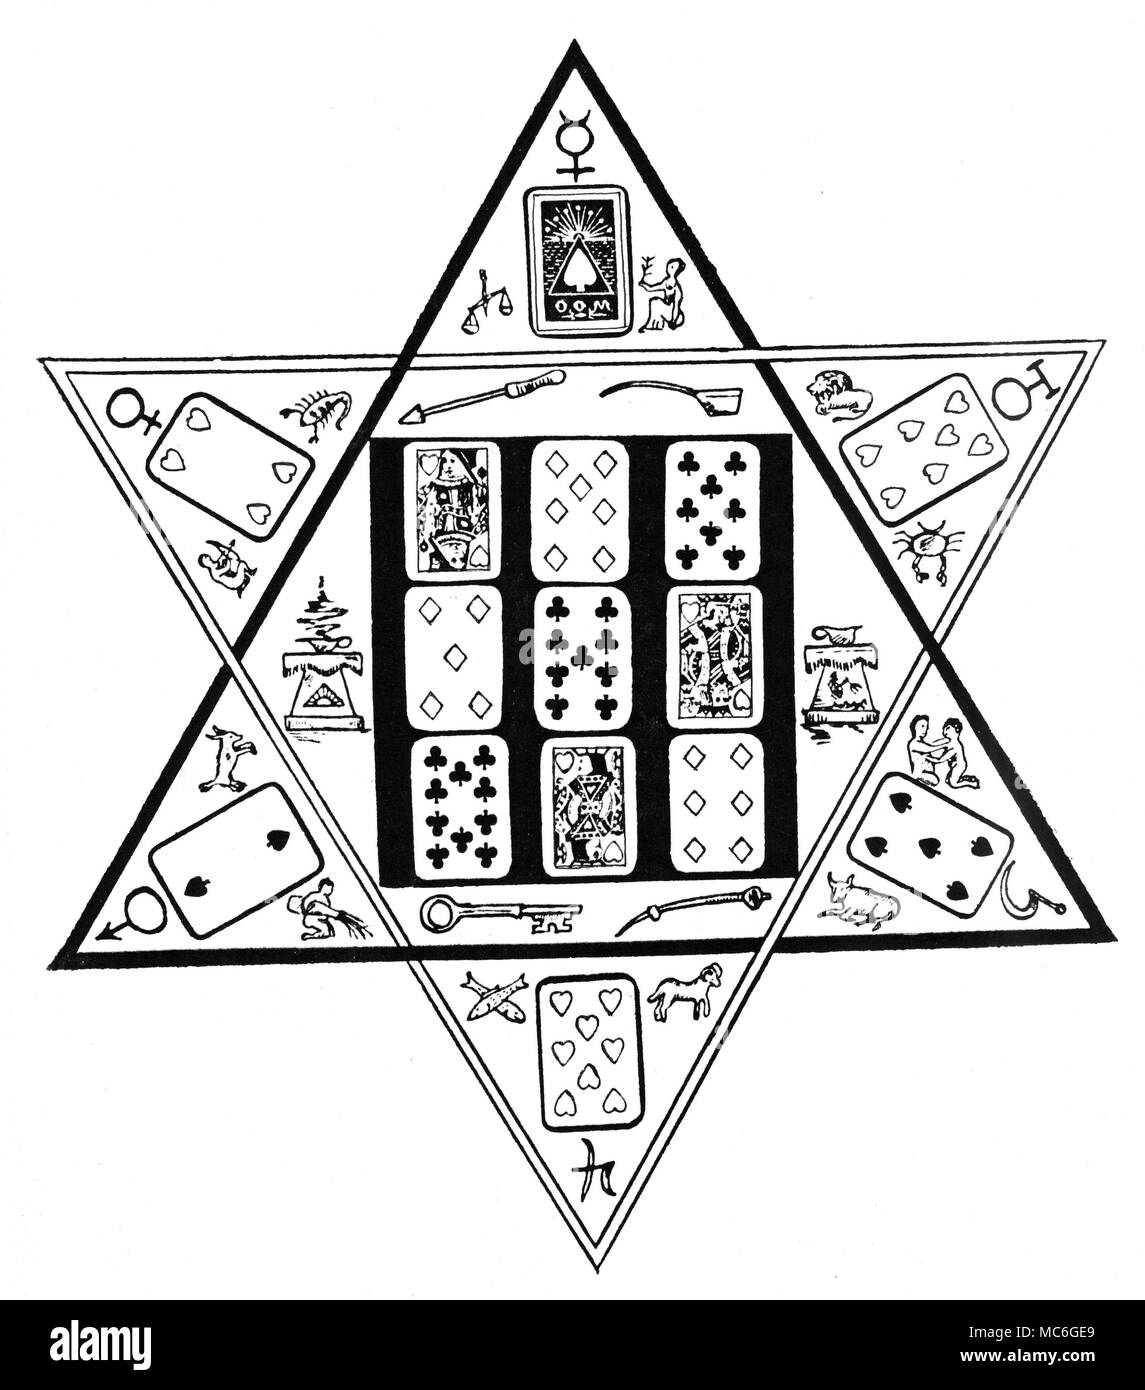 Cartomancie un motif officiel des jeux de cartes, établies à des fins  prédictives sur un sceau de Salomon. Les radiants du joint, ou des étoiles,  sont chacun fait avec des images de